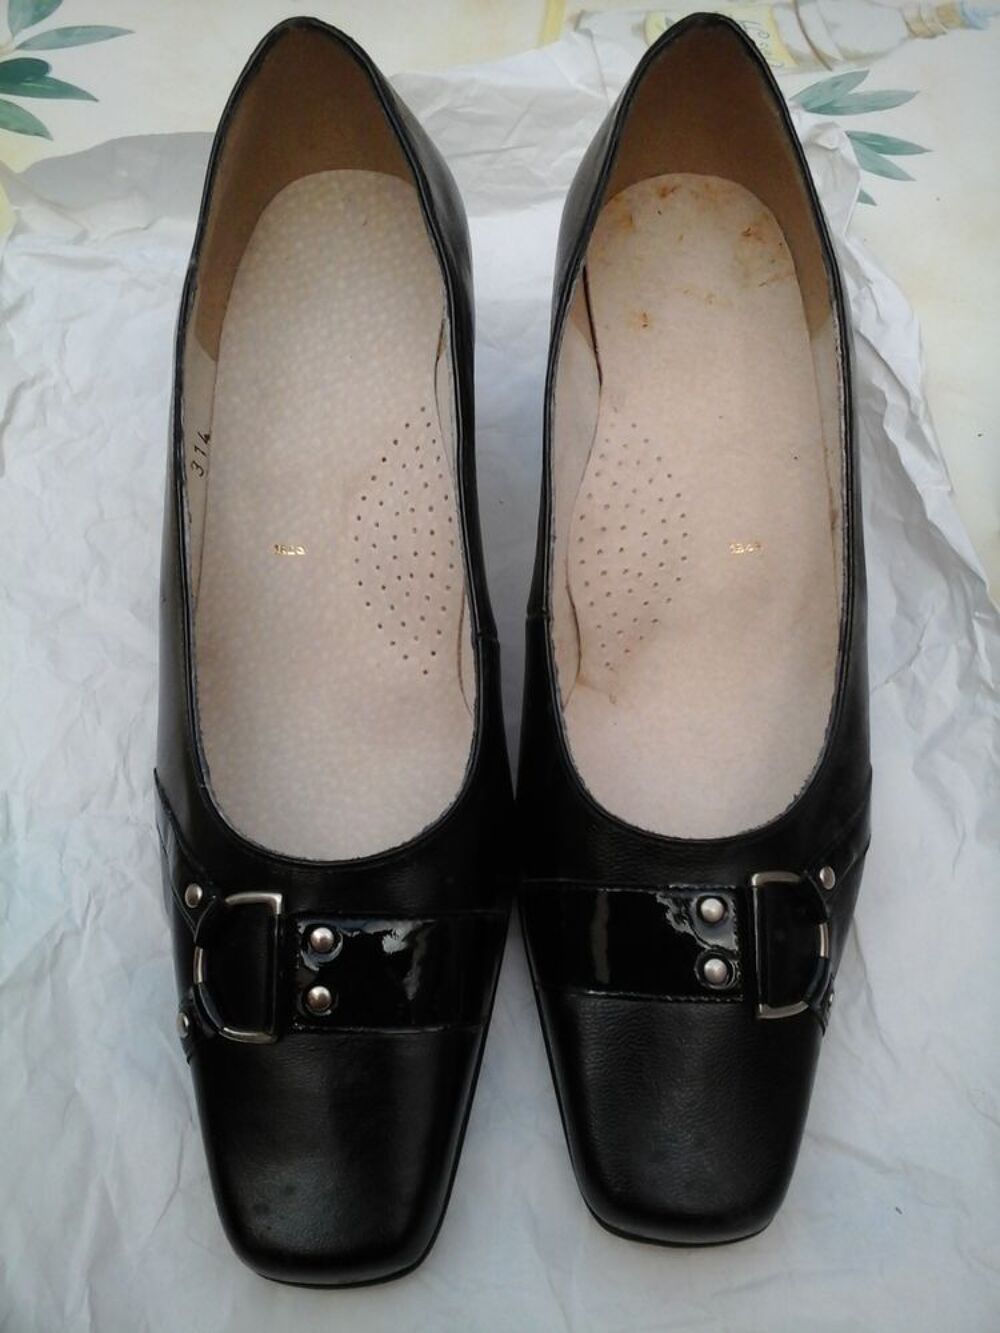 Escarpins cuir noir Chaussures